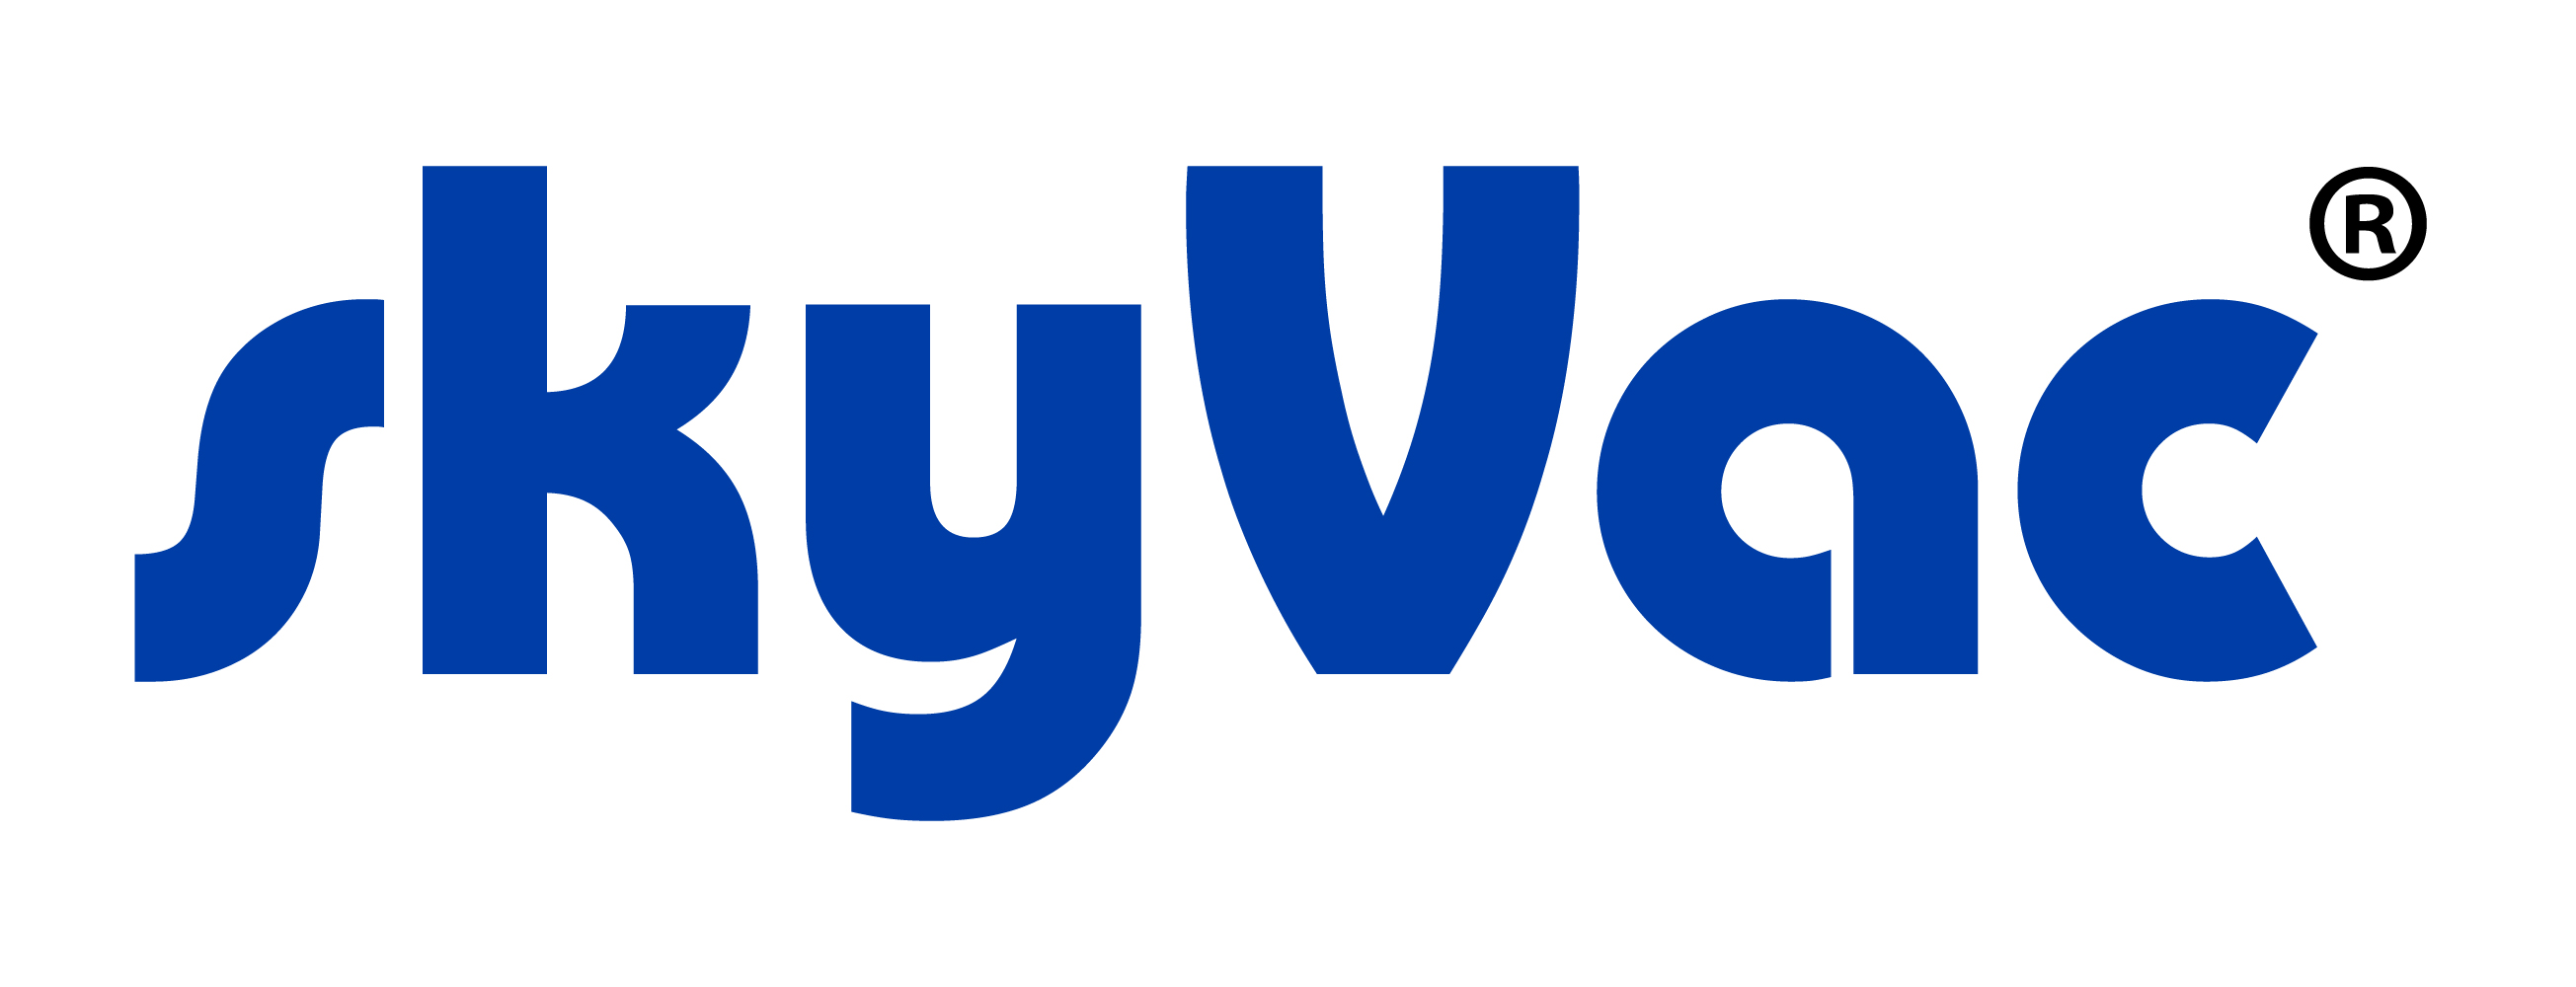 SkyVac Blue Logo 2020